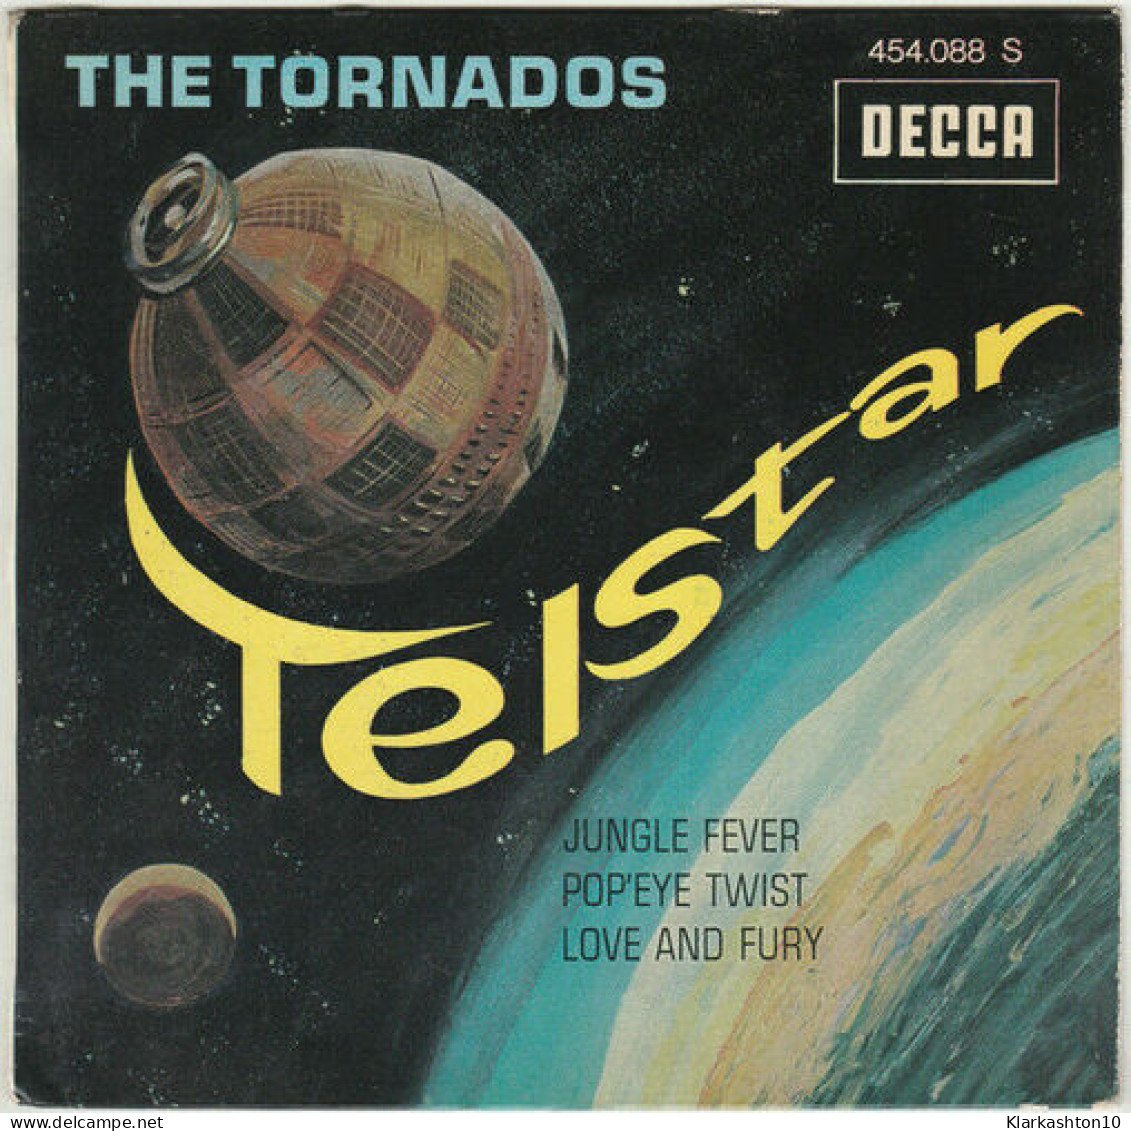 Telstar - Unclassified